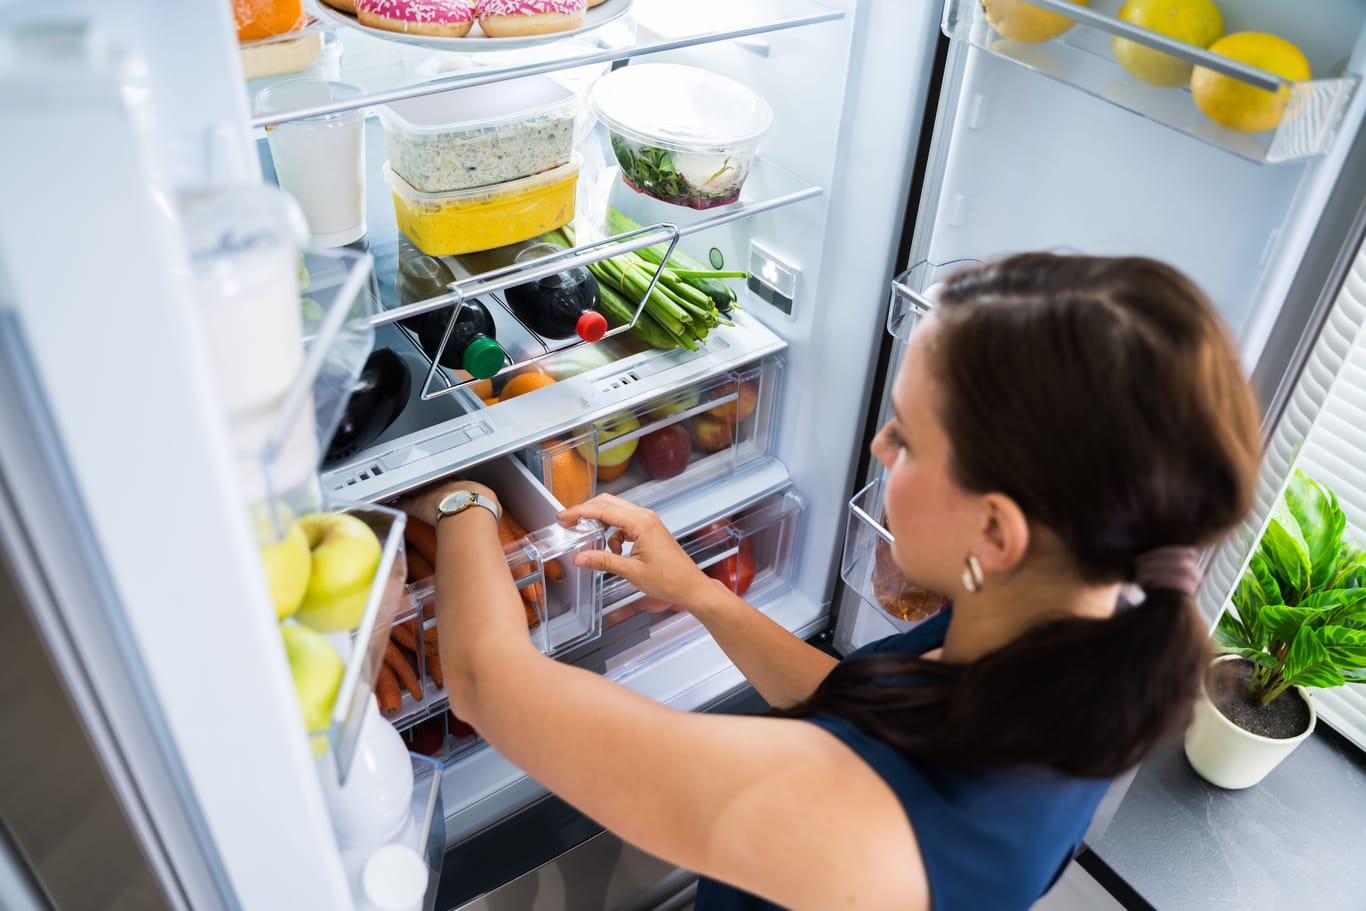 Bei Kühlschränken gibt es in puncto Preis und Leistung enorme Unterschiede.